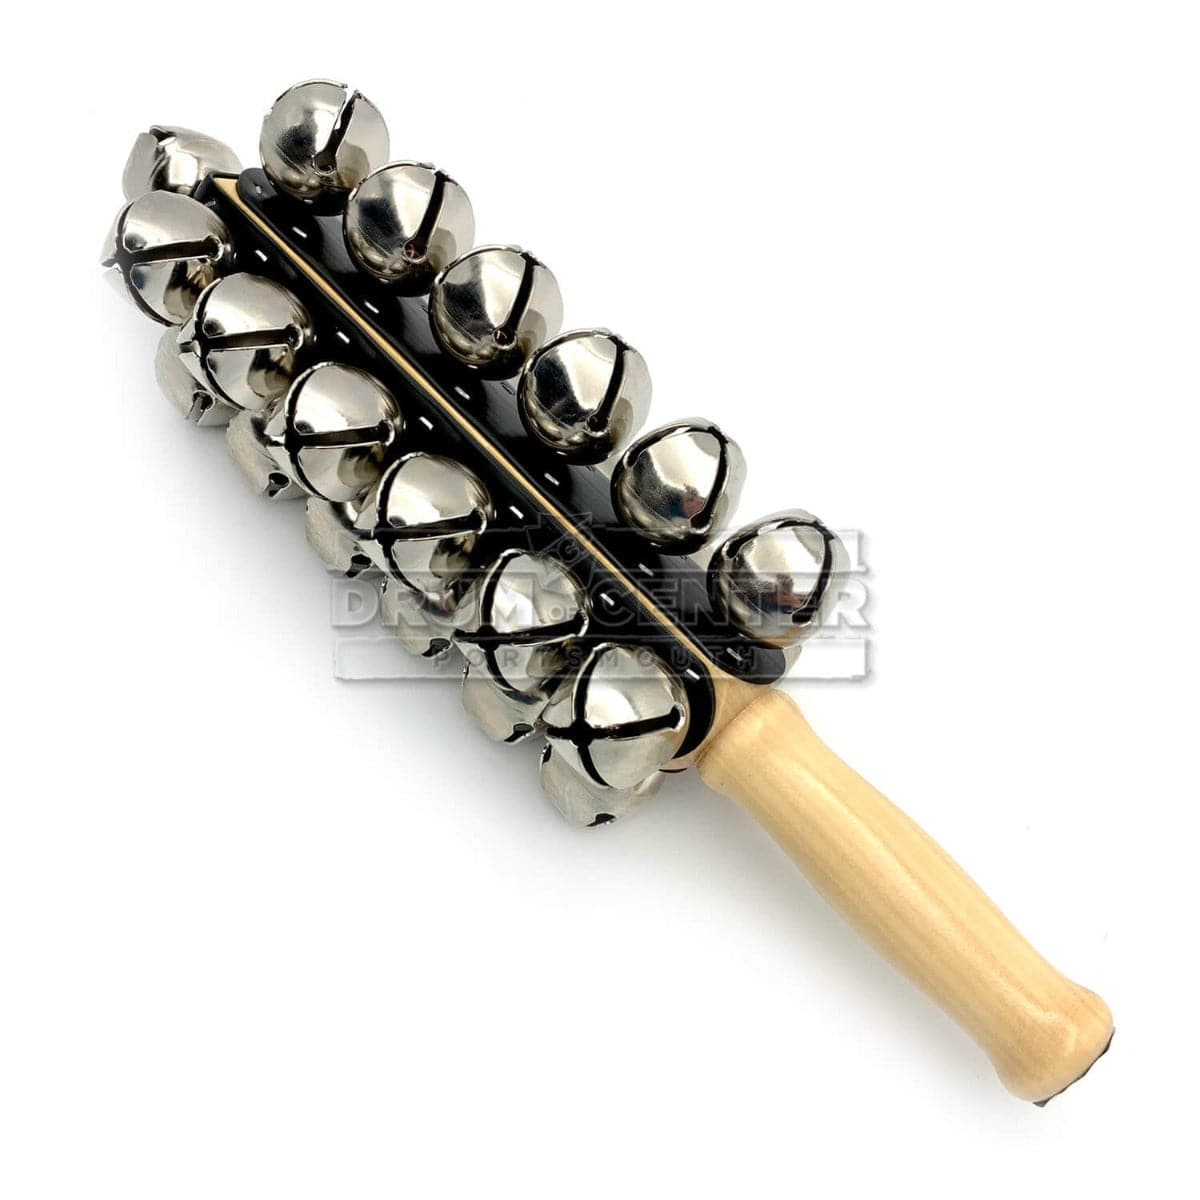 Sleigh Bells Musical Instrument